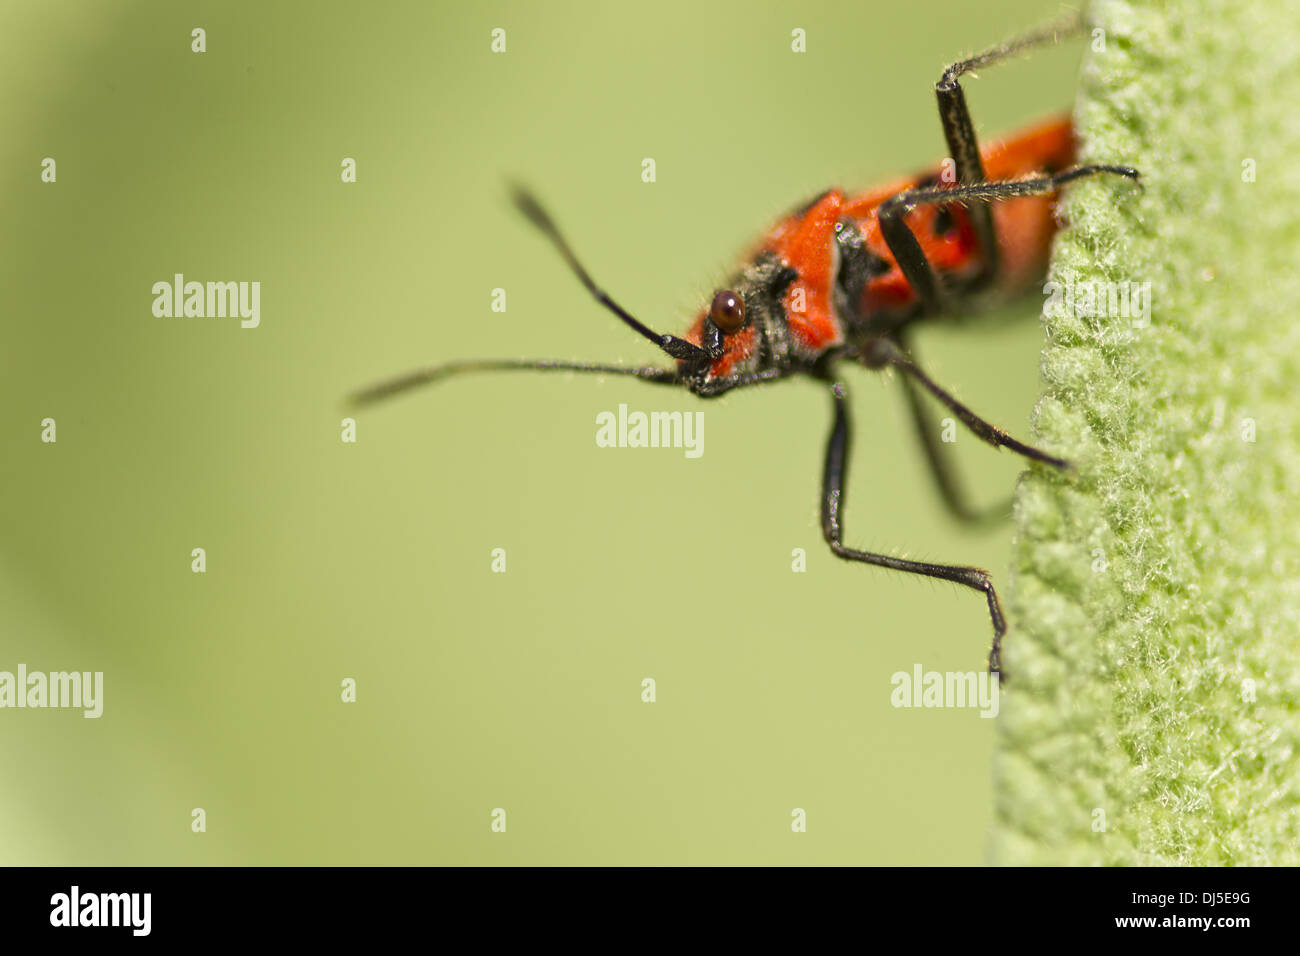 Common fire bug (Pyrrhocoris apterus) Stock Photo